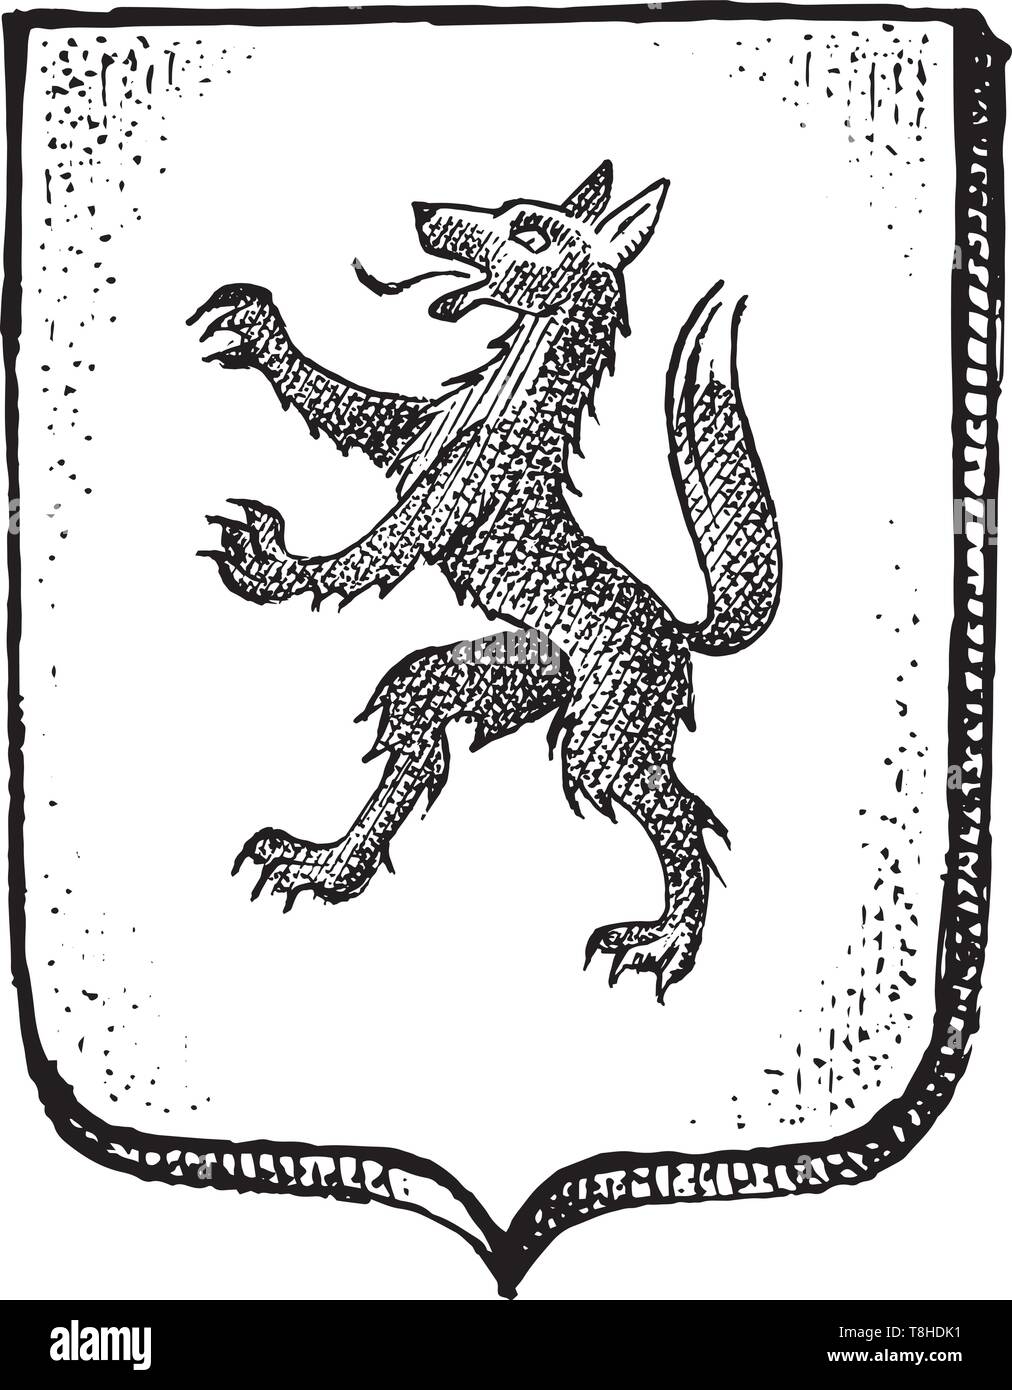 Per animale araldico in stile vintage. Inciso lo stemma con la mitica creatura. Emblemi medievale e il logo del regno fantasy. Illustrazione Vettoriale